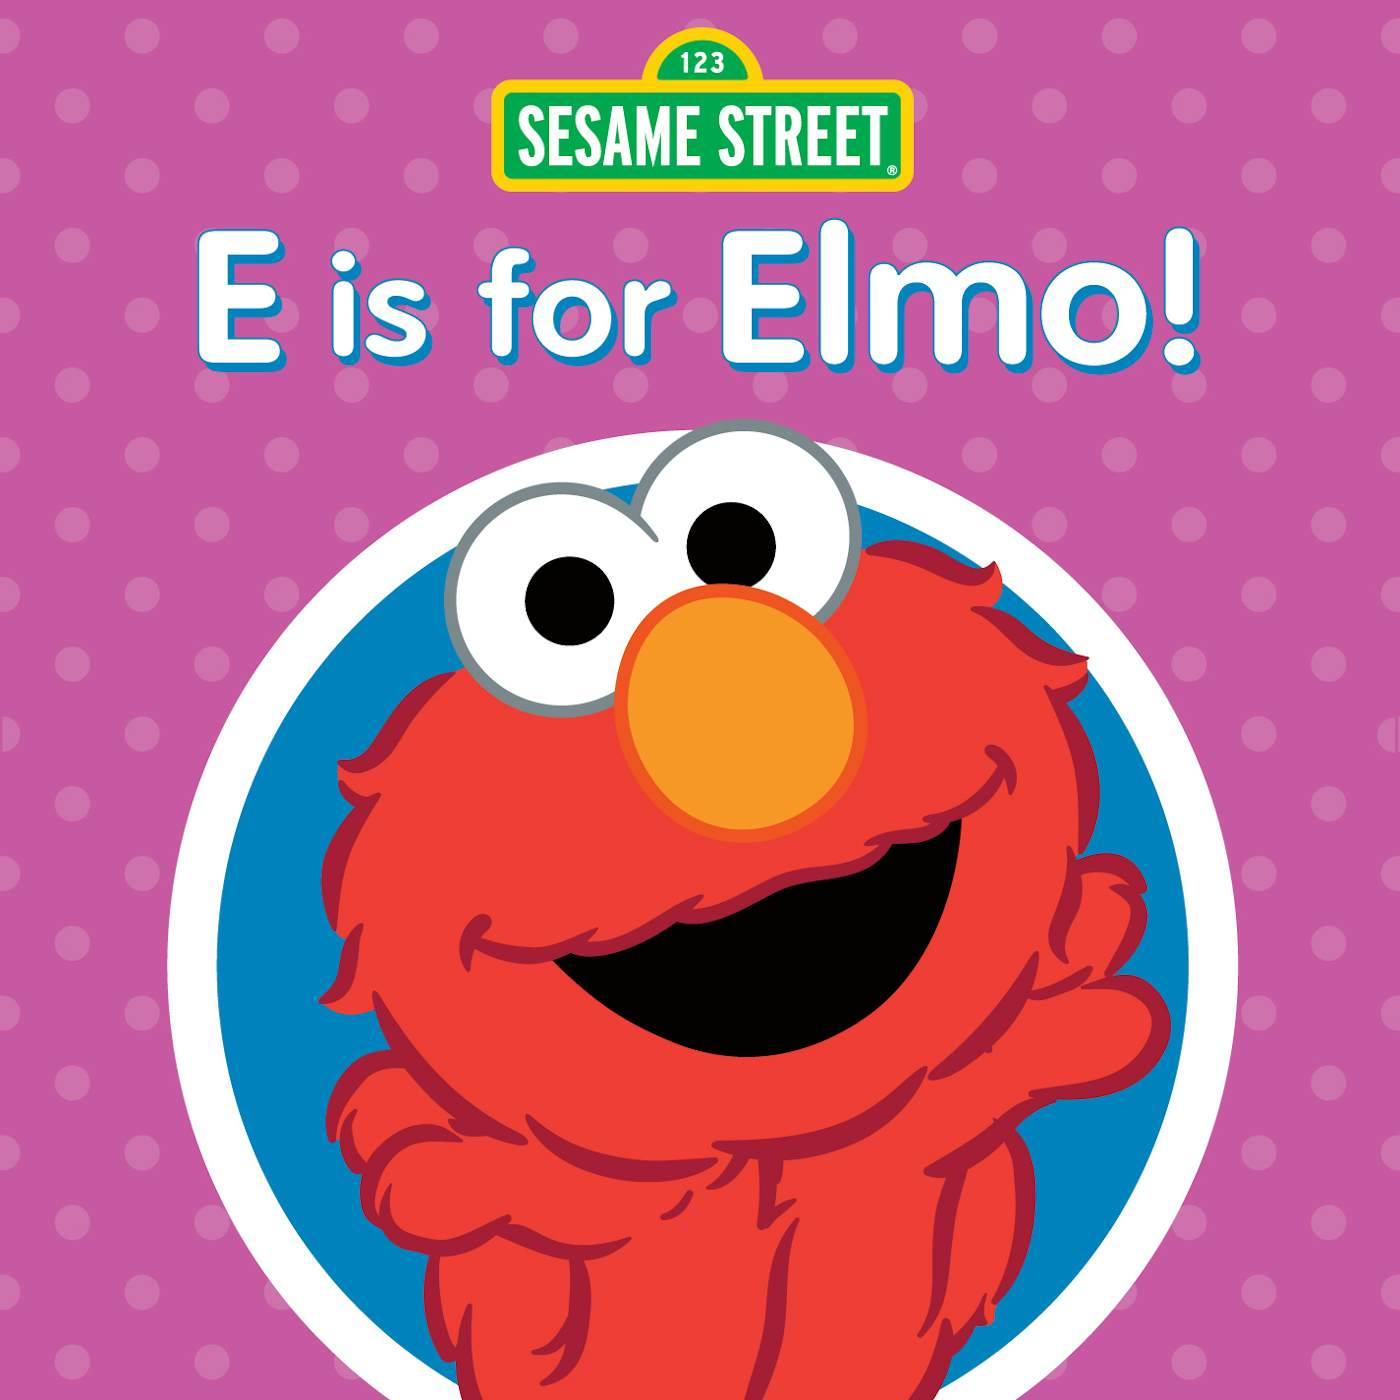 Sesame Street E IS FOR ELMO CD